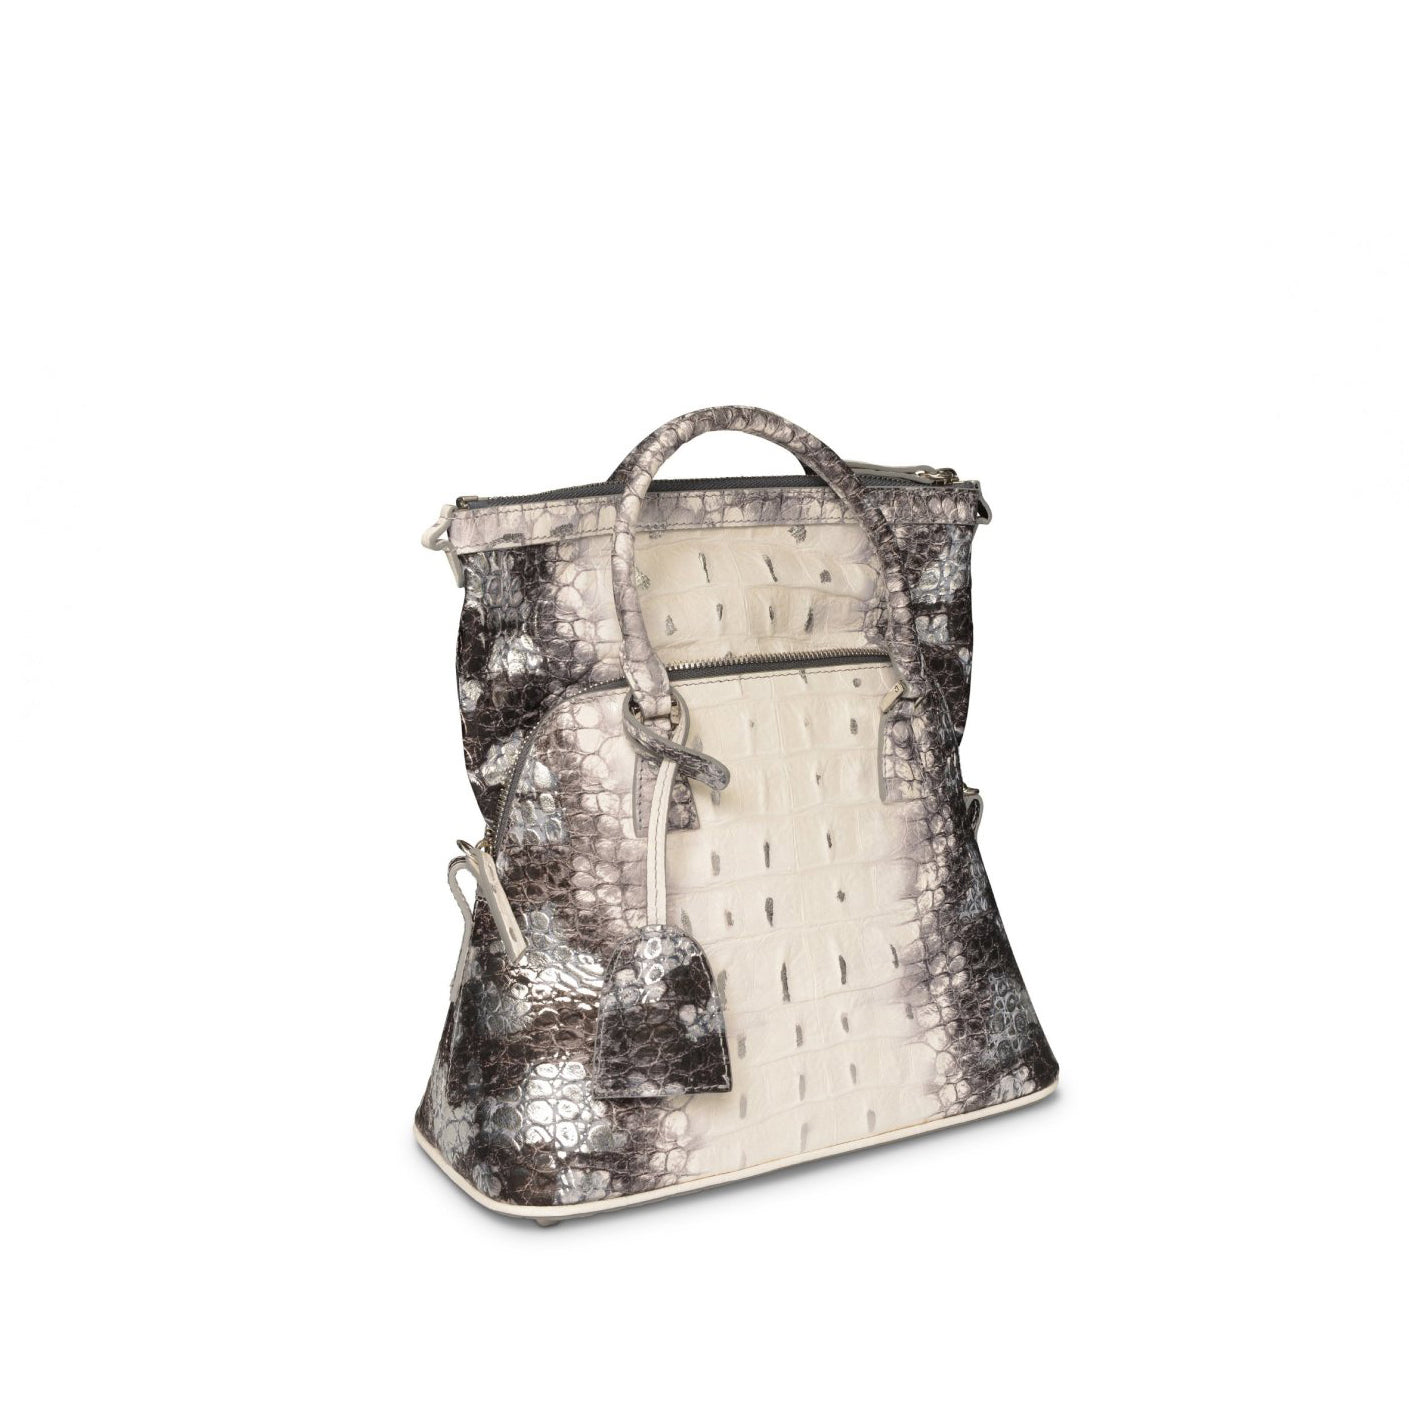 Mini 5Ac Tote Bag in White/Silver